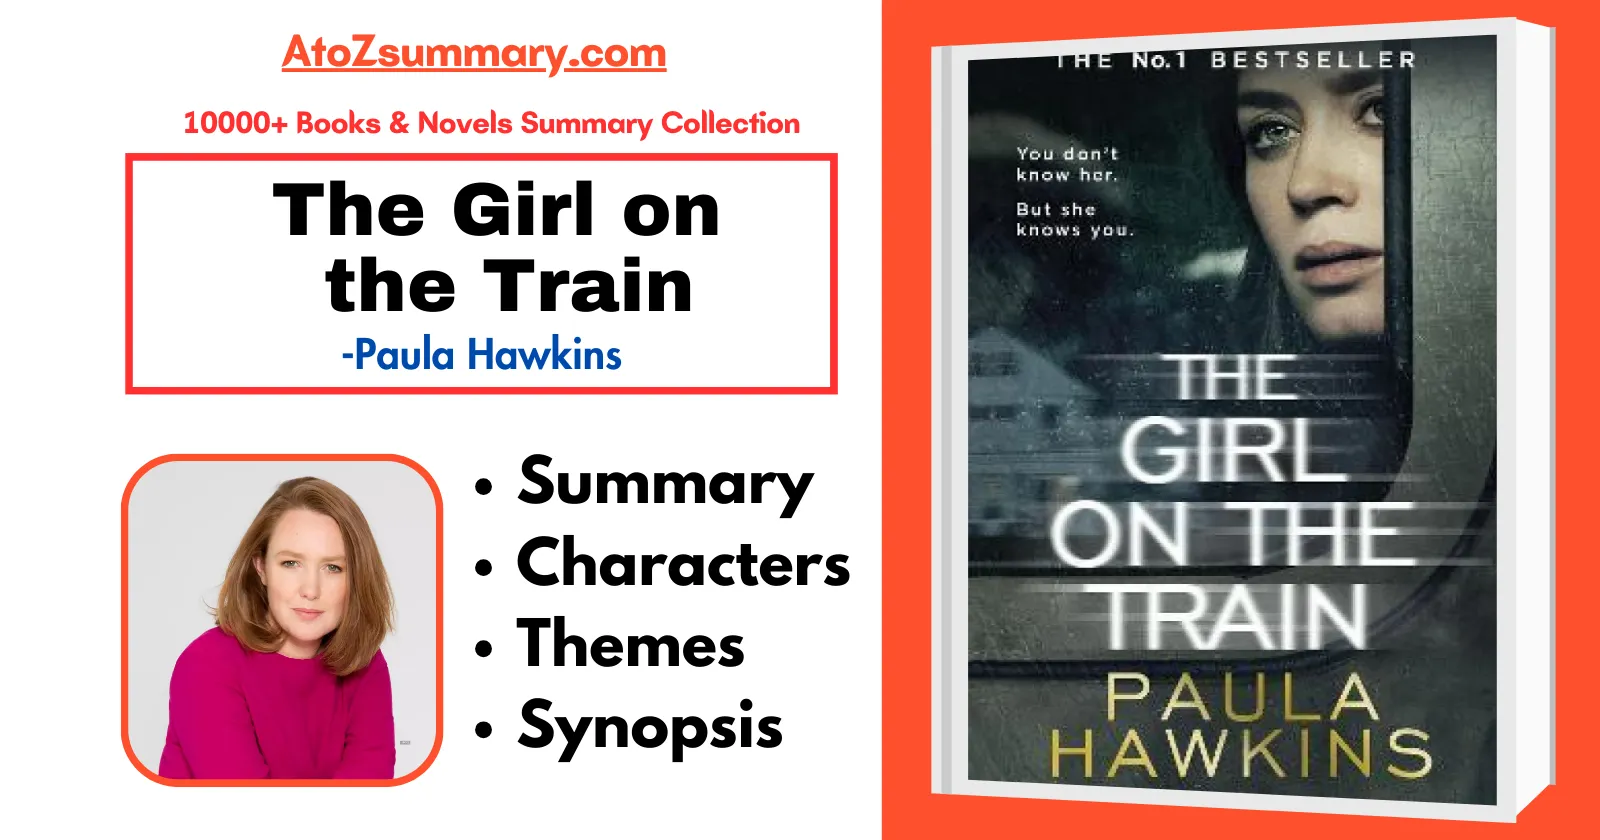 The Girl on the Train Summary